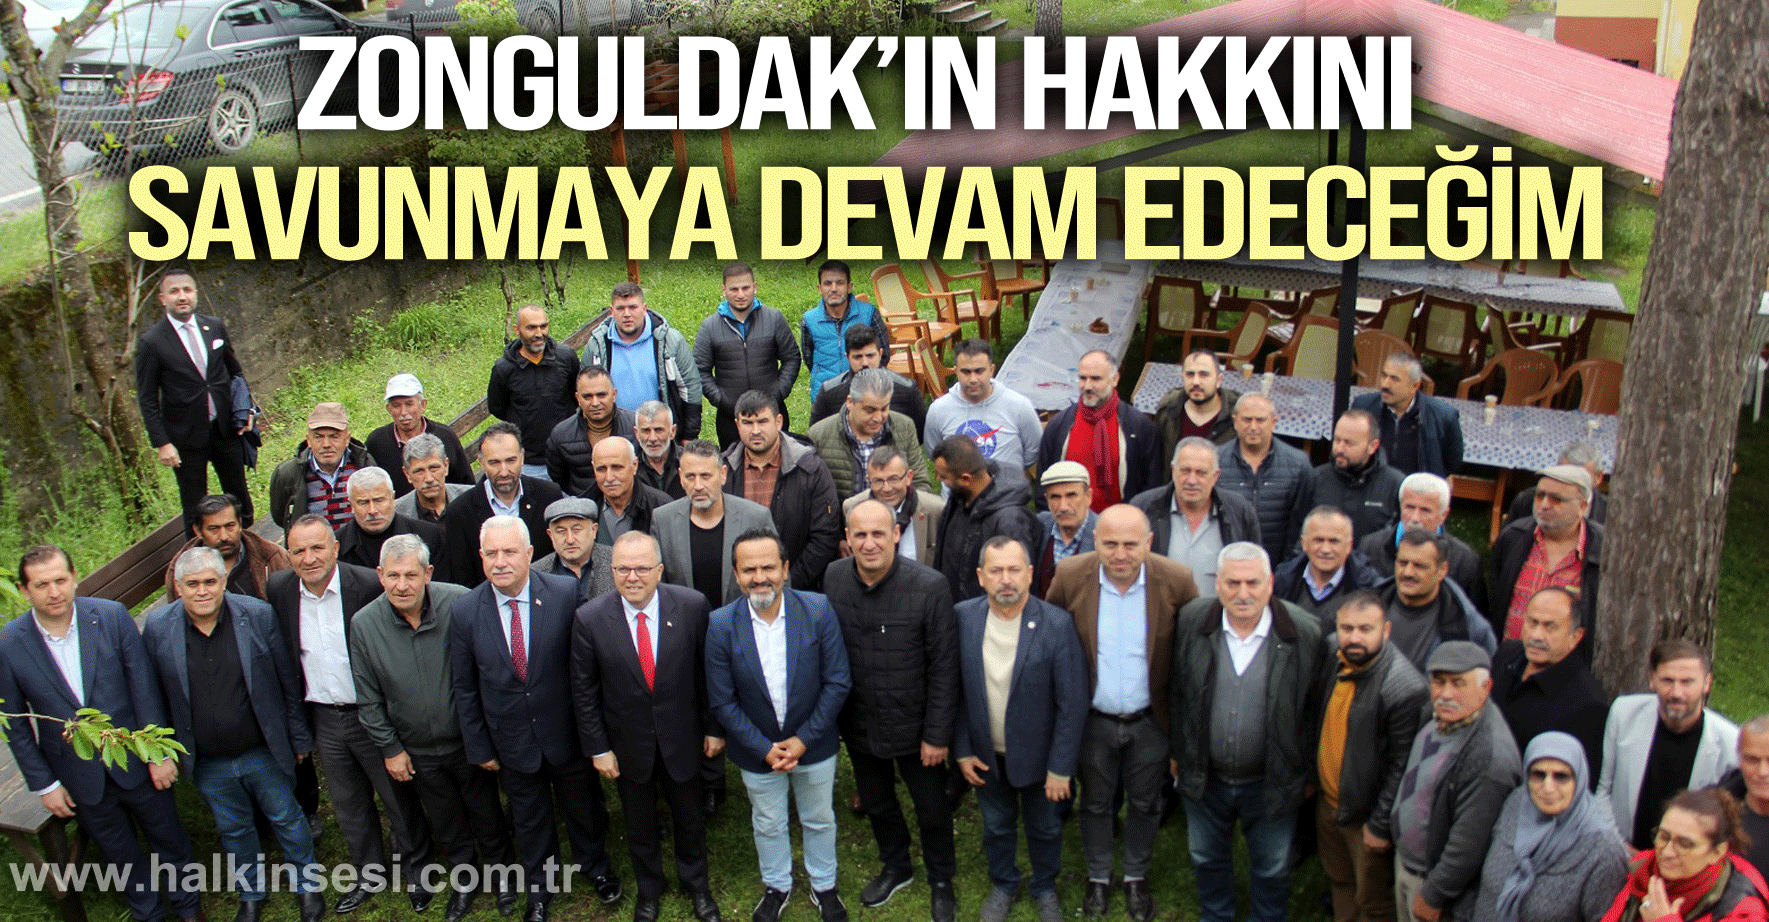 “Zonguldak’ın hakkını savunmaya devam edeceğim”